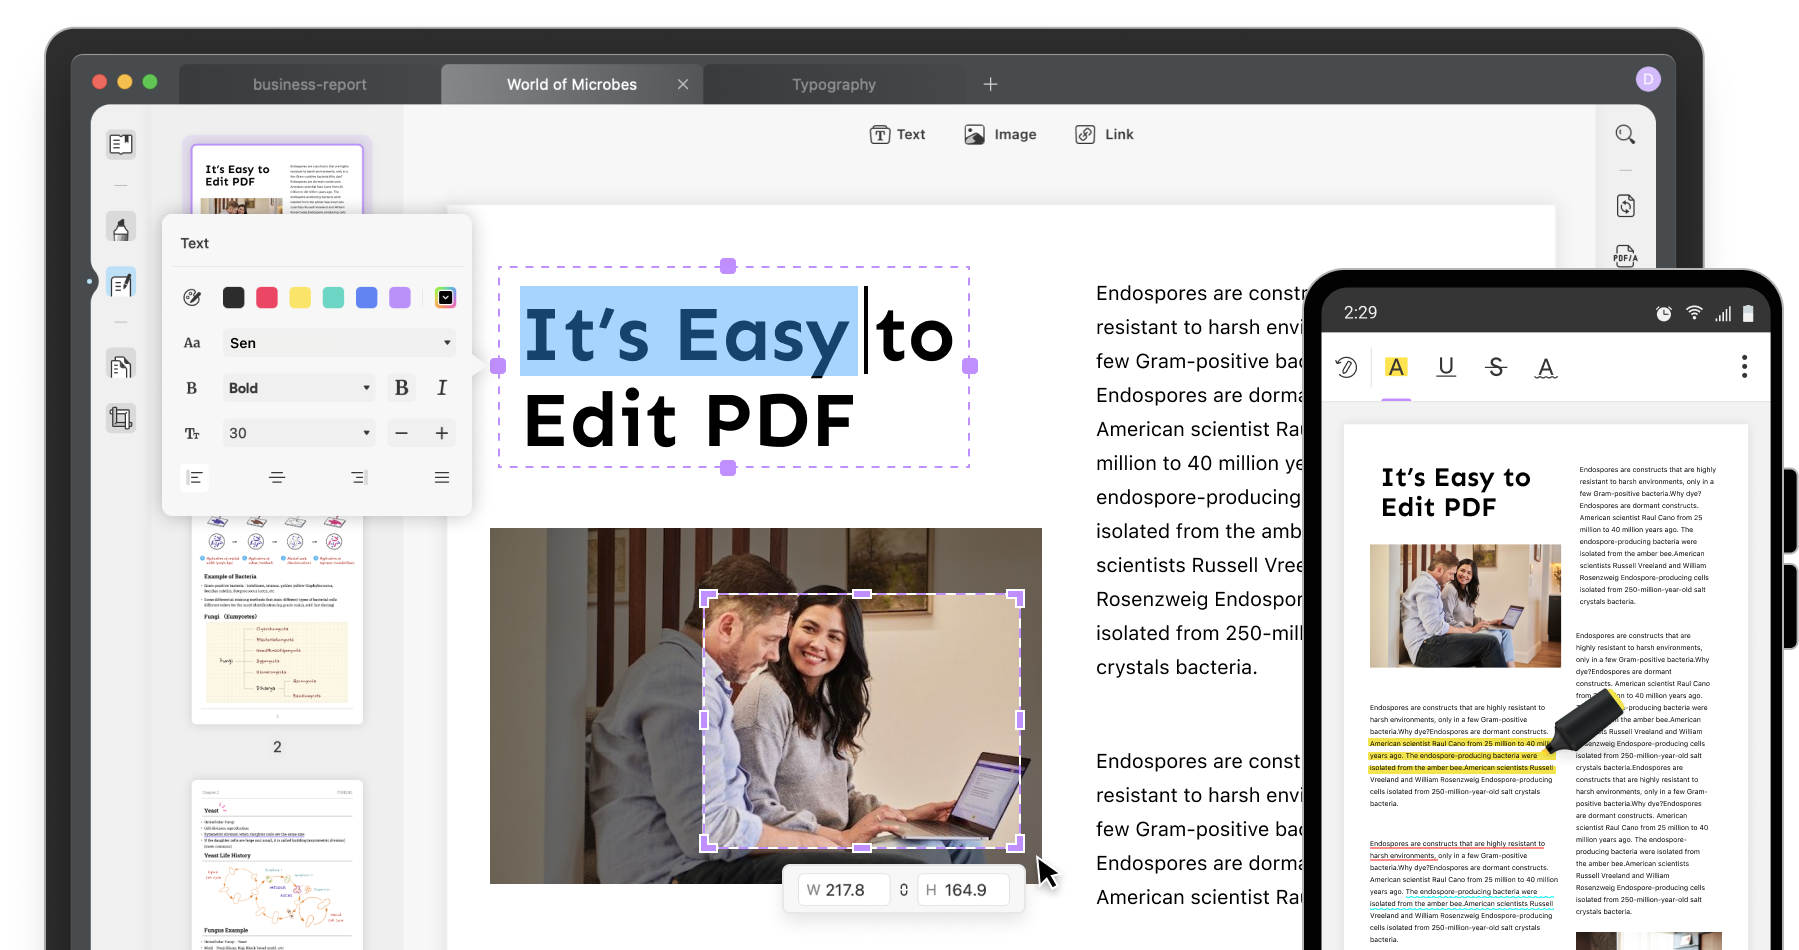 Domine a edição e conversão de PDFs com a ferramenta SwifDoo